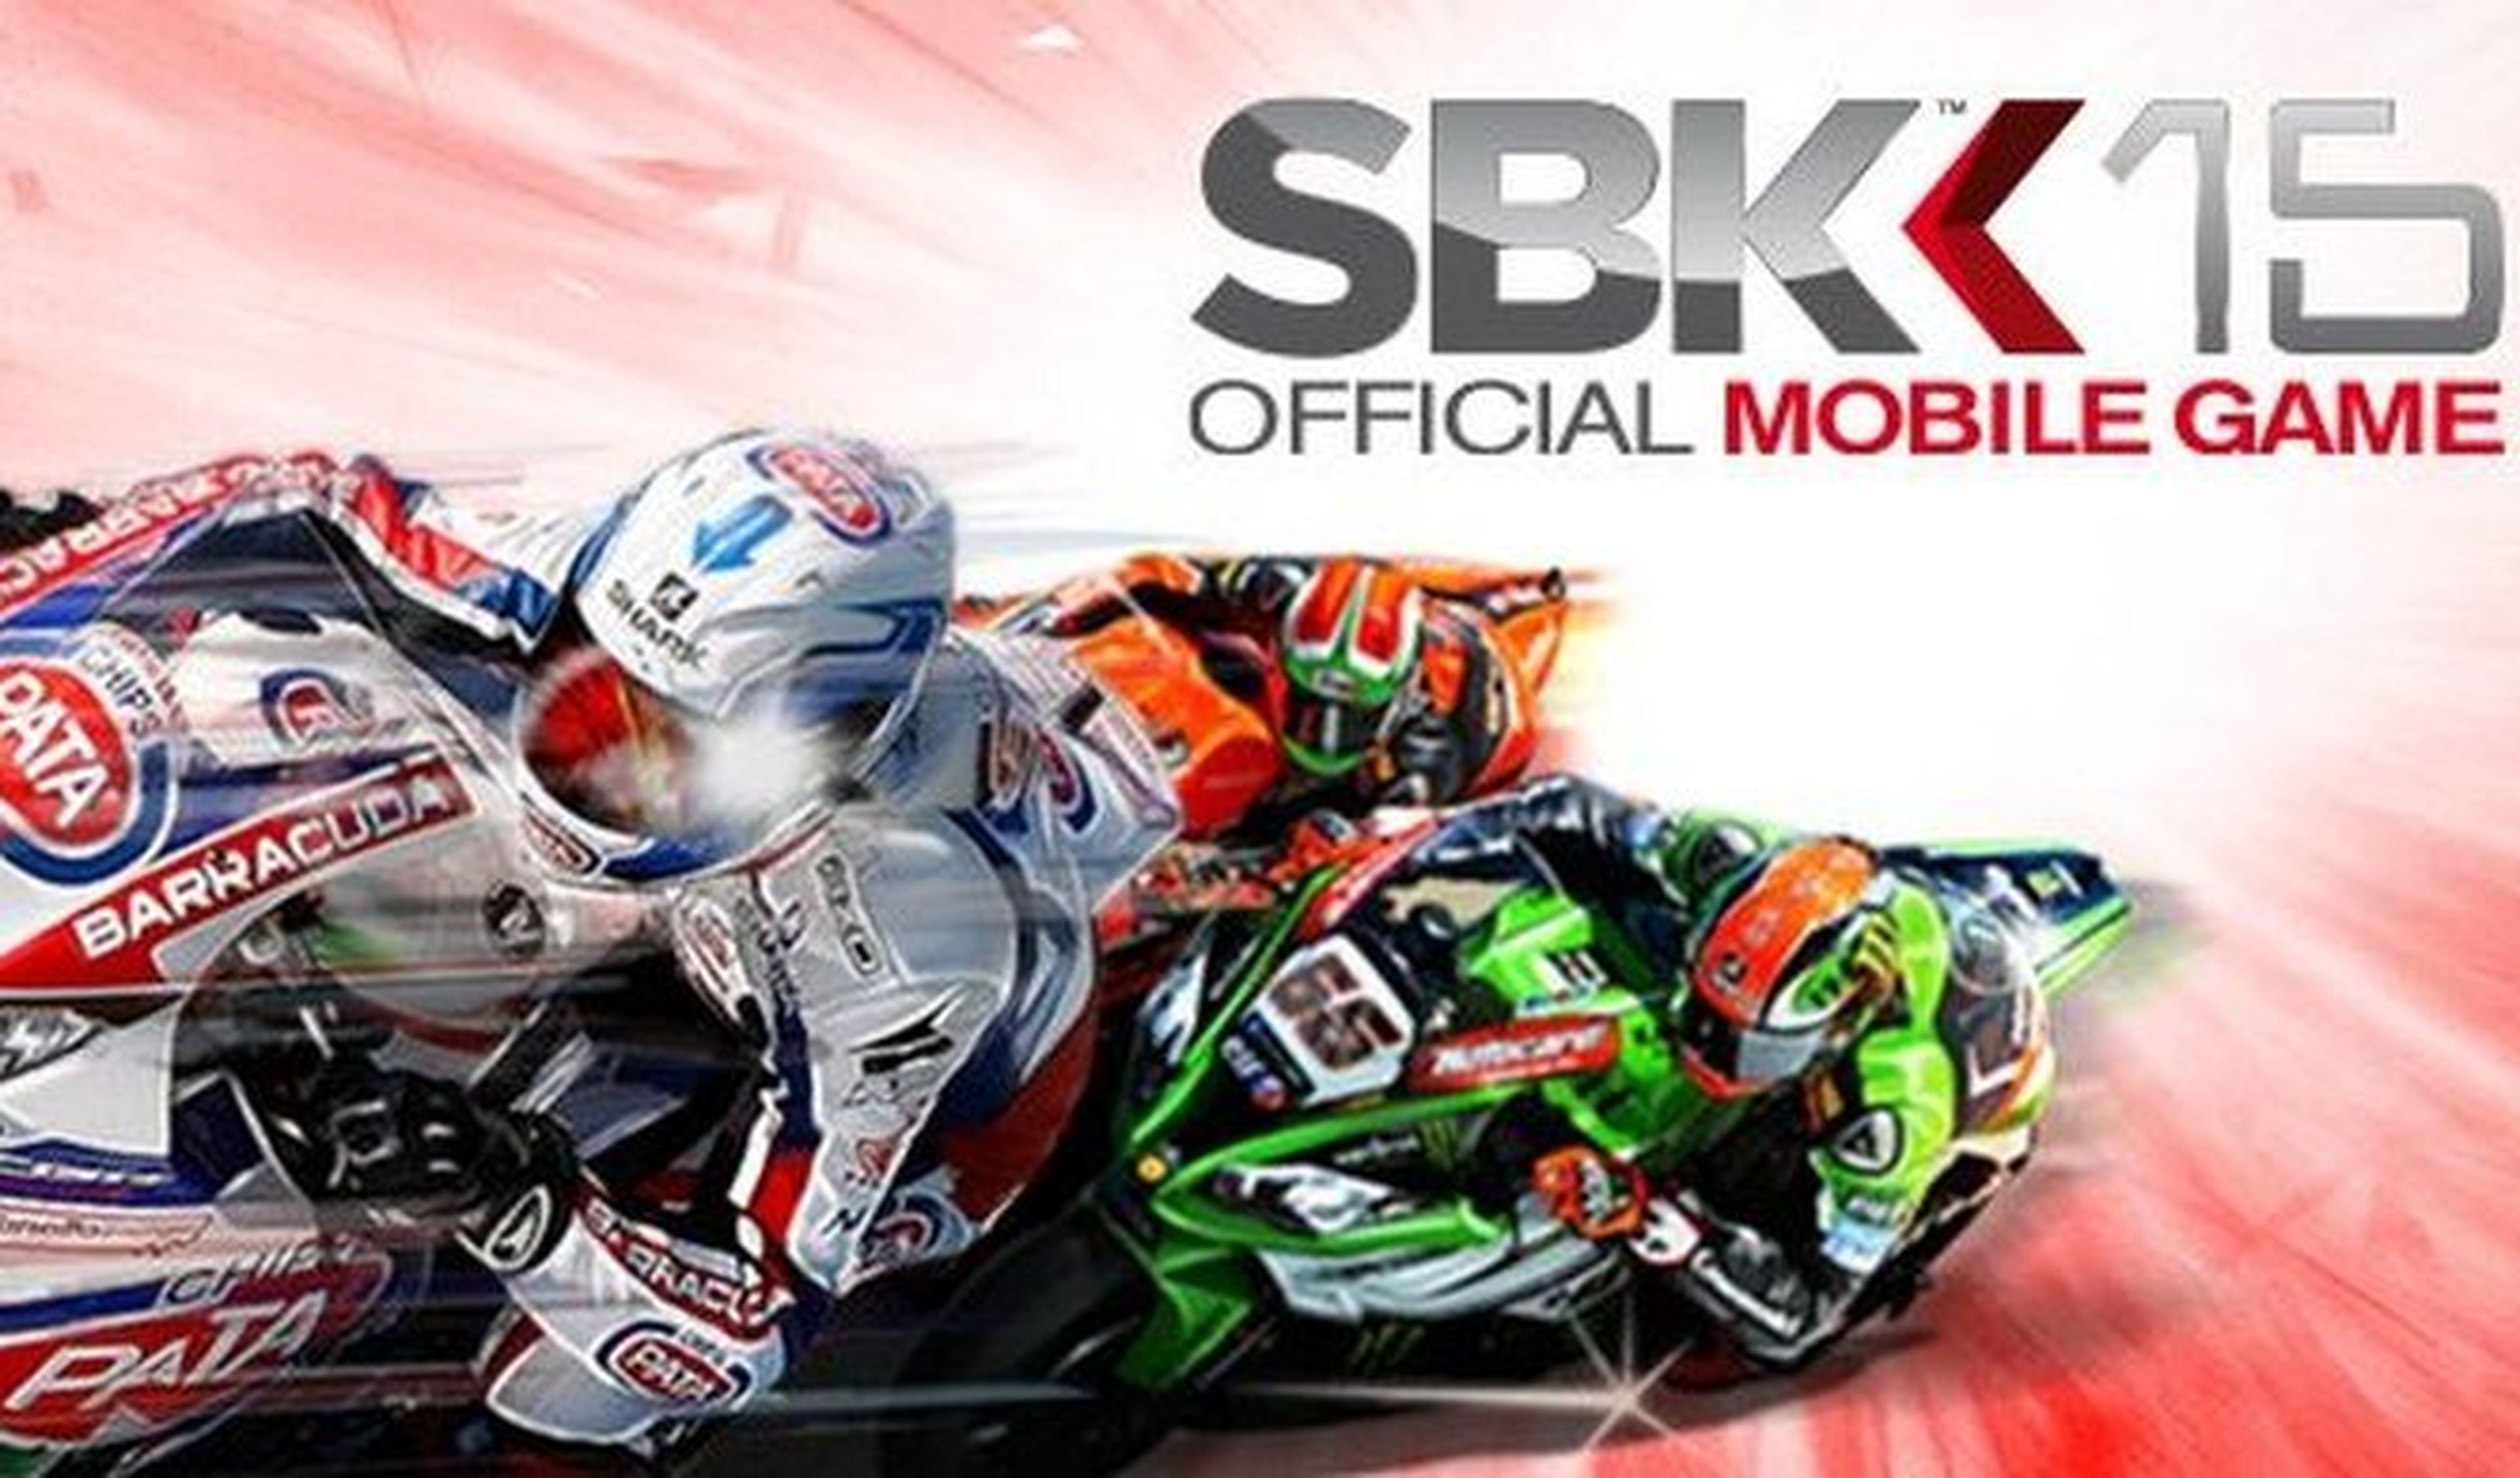 SBK 15, el videojuego oficial de Superbike